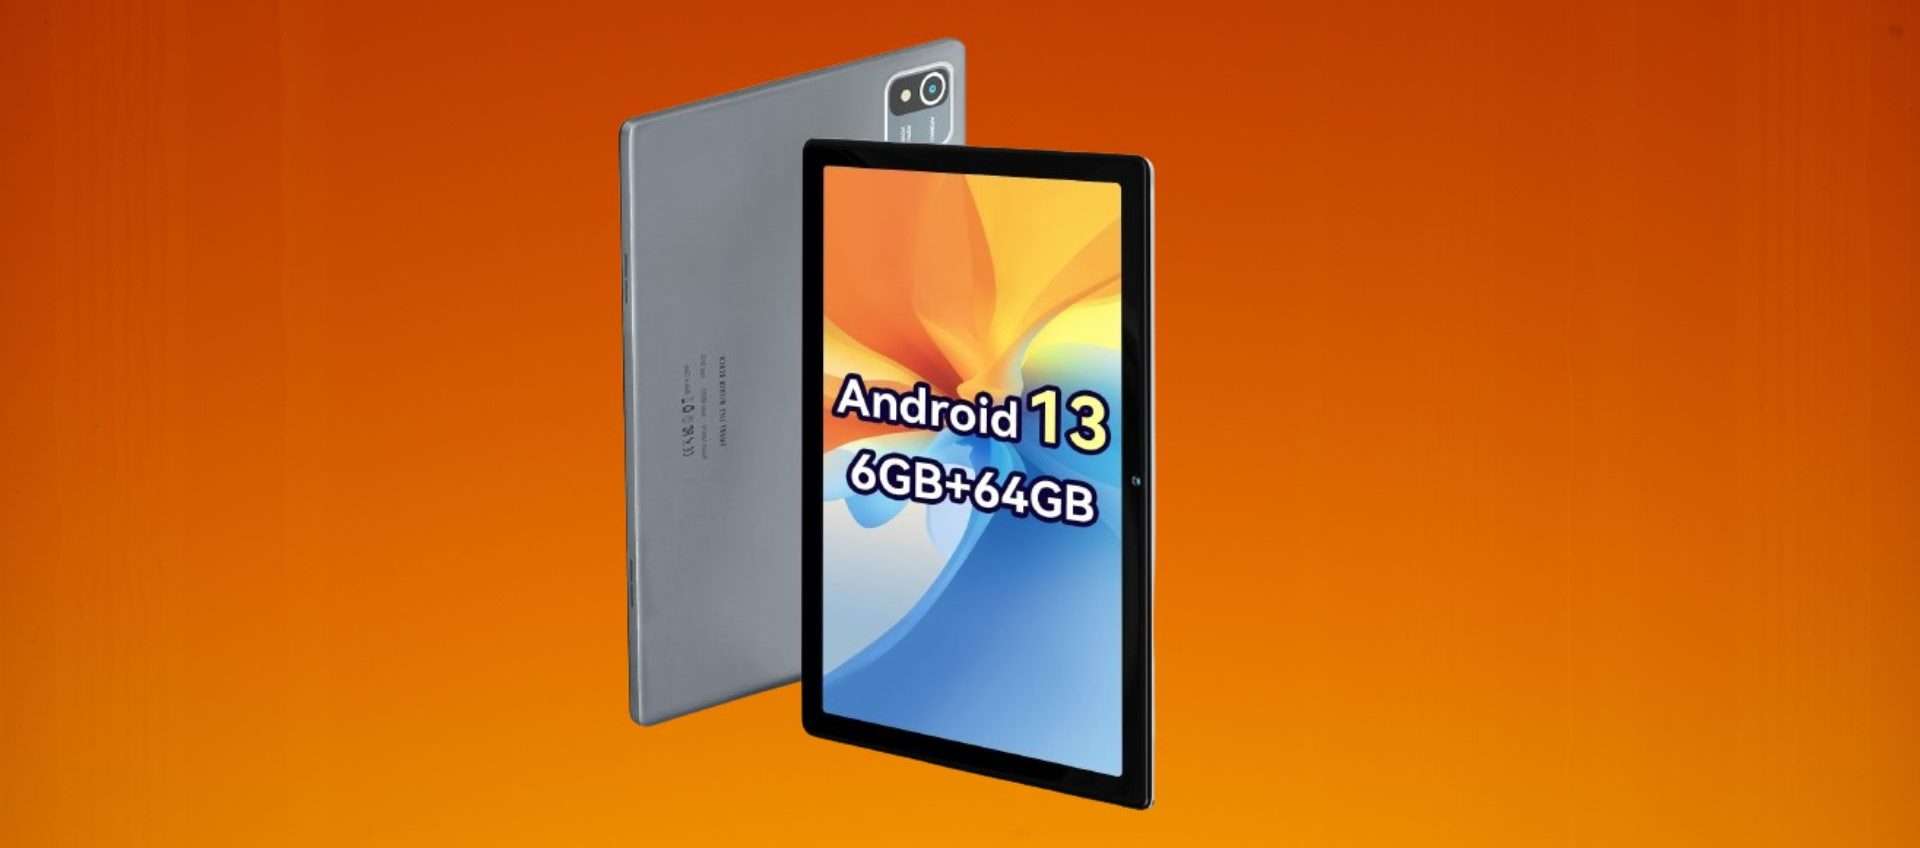 Tablet con Android 13 a meno di 60€?! Tutto vero grazie a questa offerta imperdibile